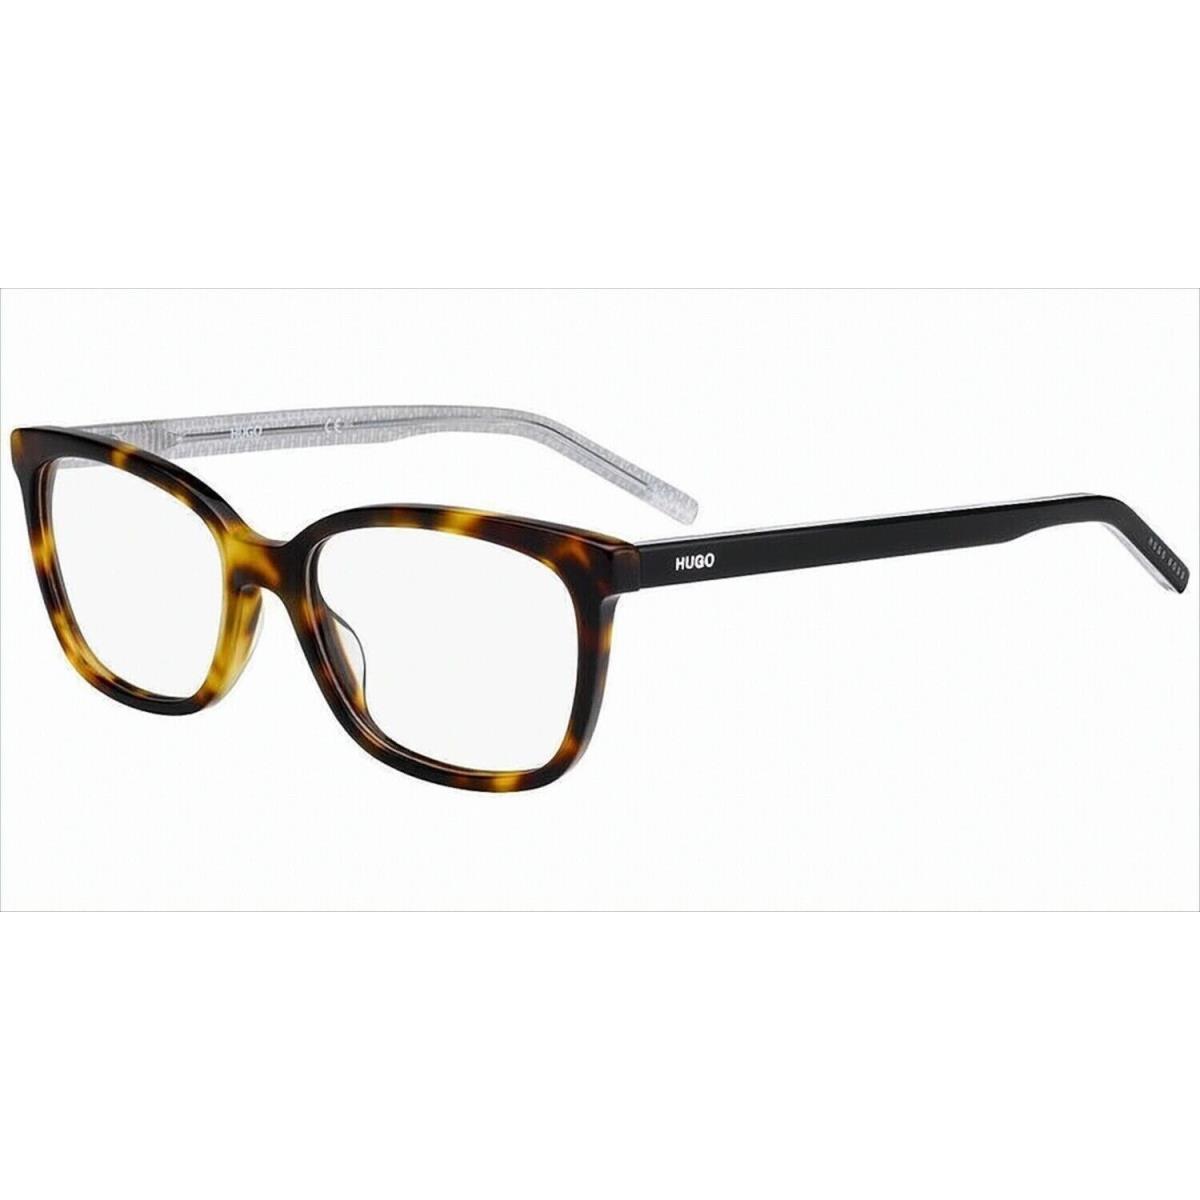 Hugo Boss Eyeglasses - 1012 0086 - Dark Havana Brown 53-16-145